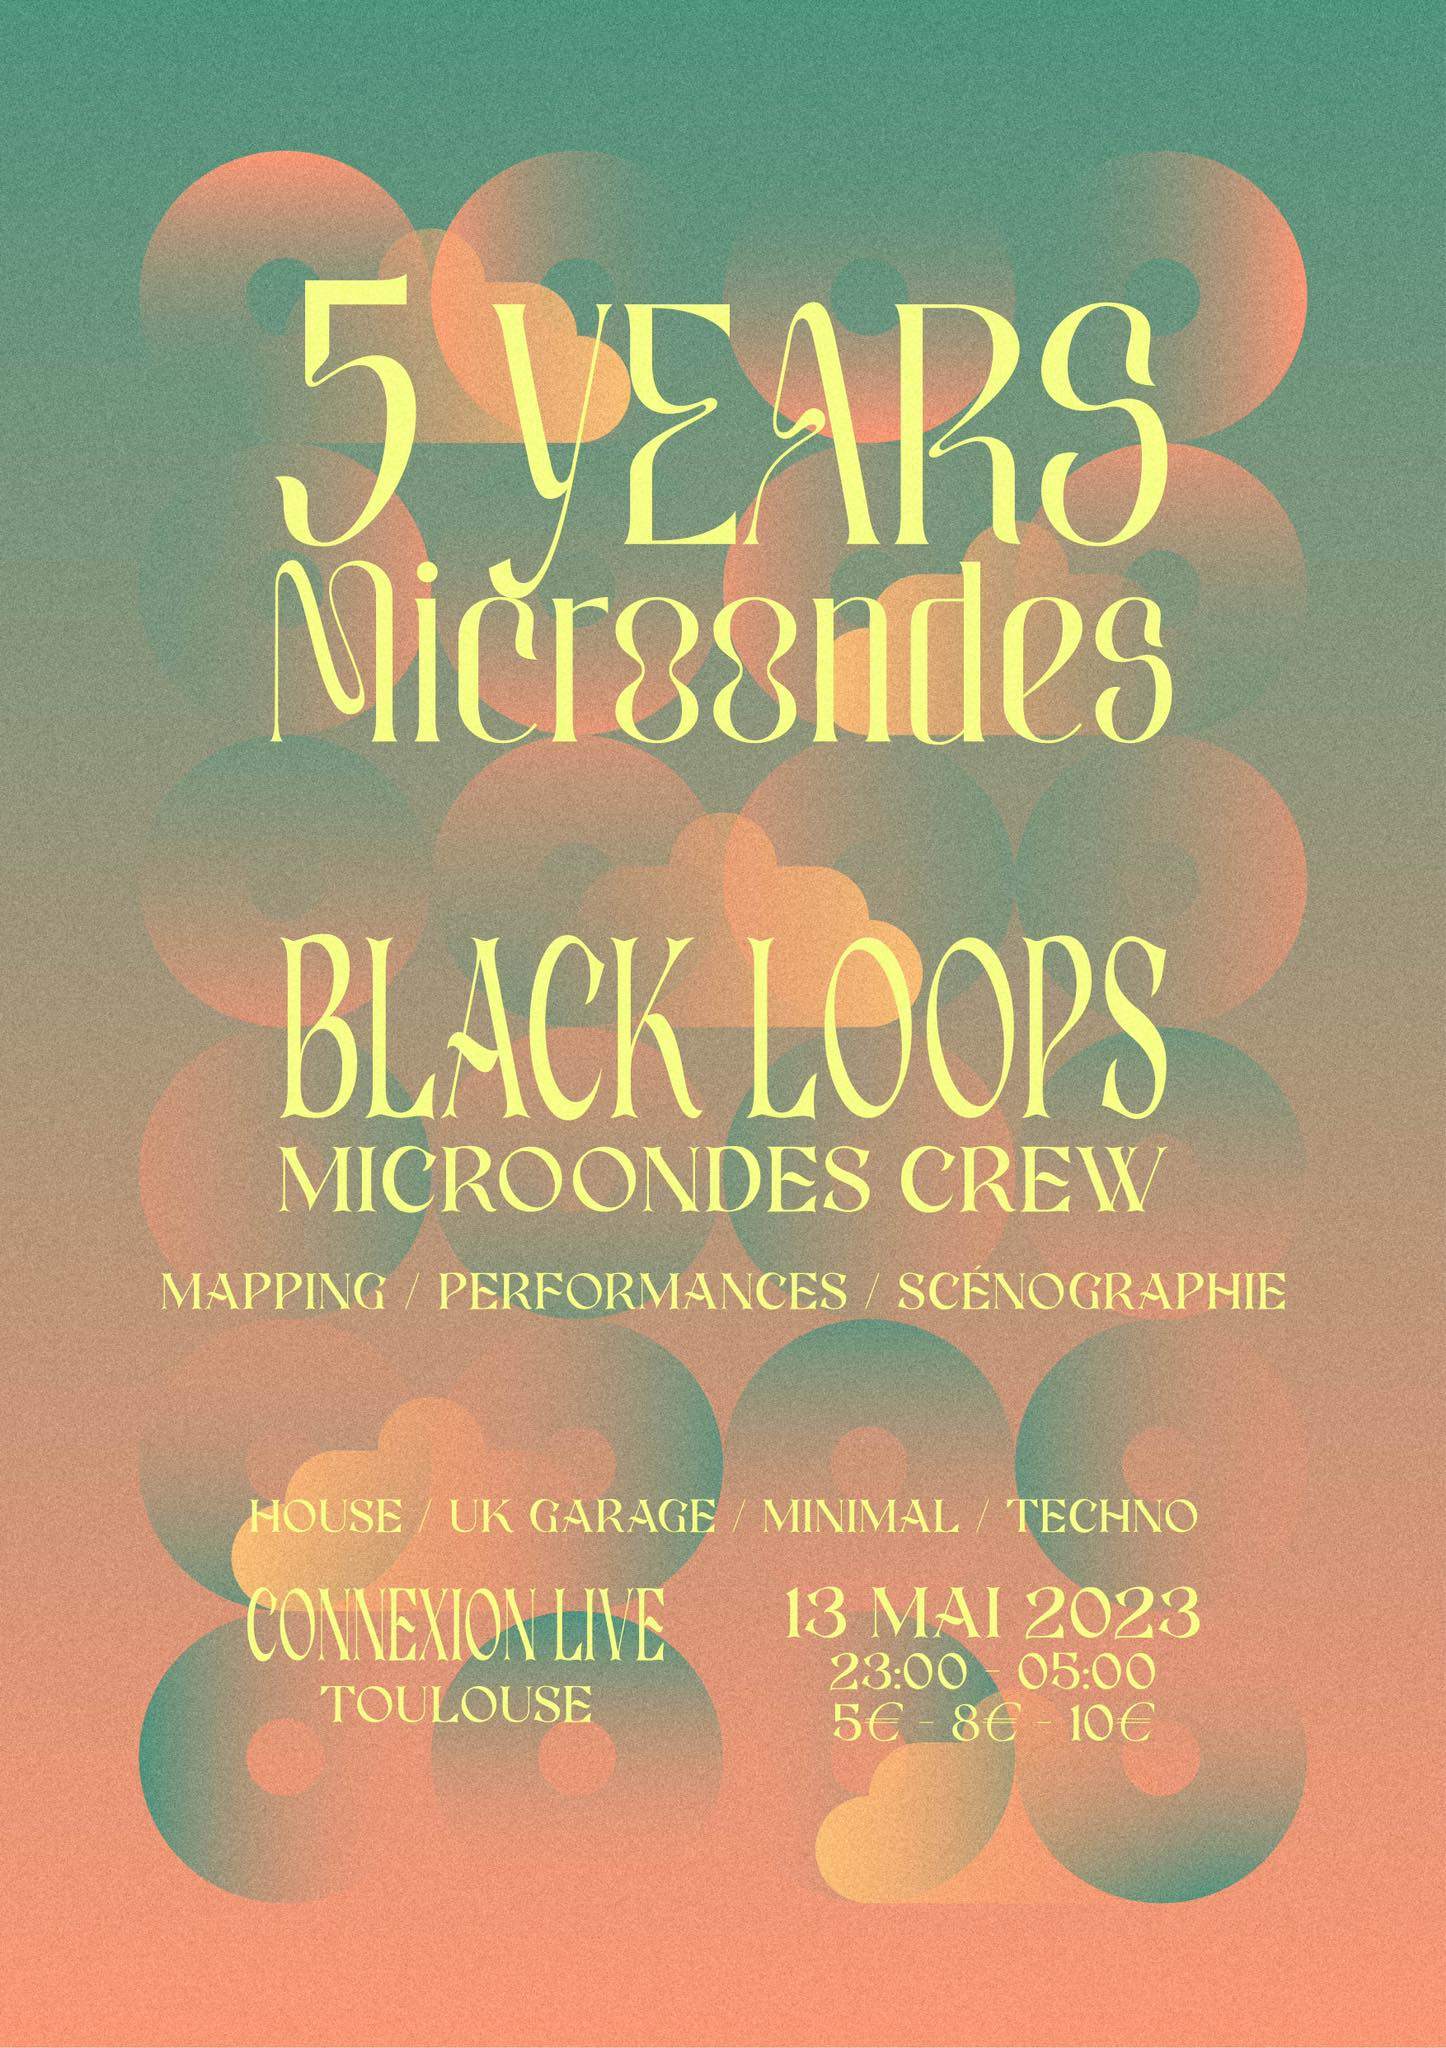 5 Years Microondes with Black Loops - Página frontal